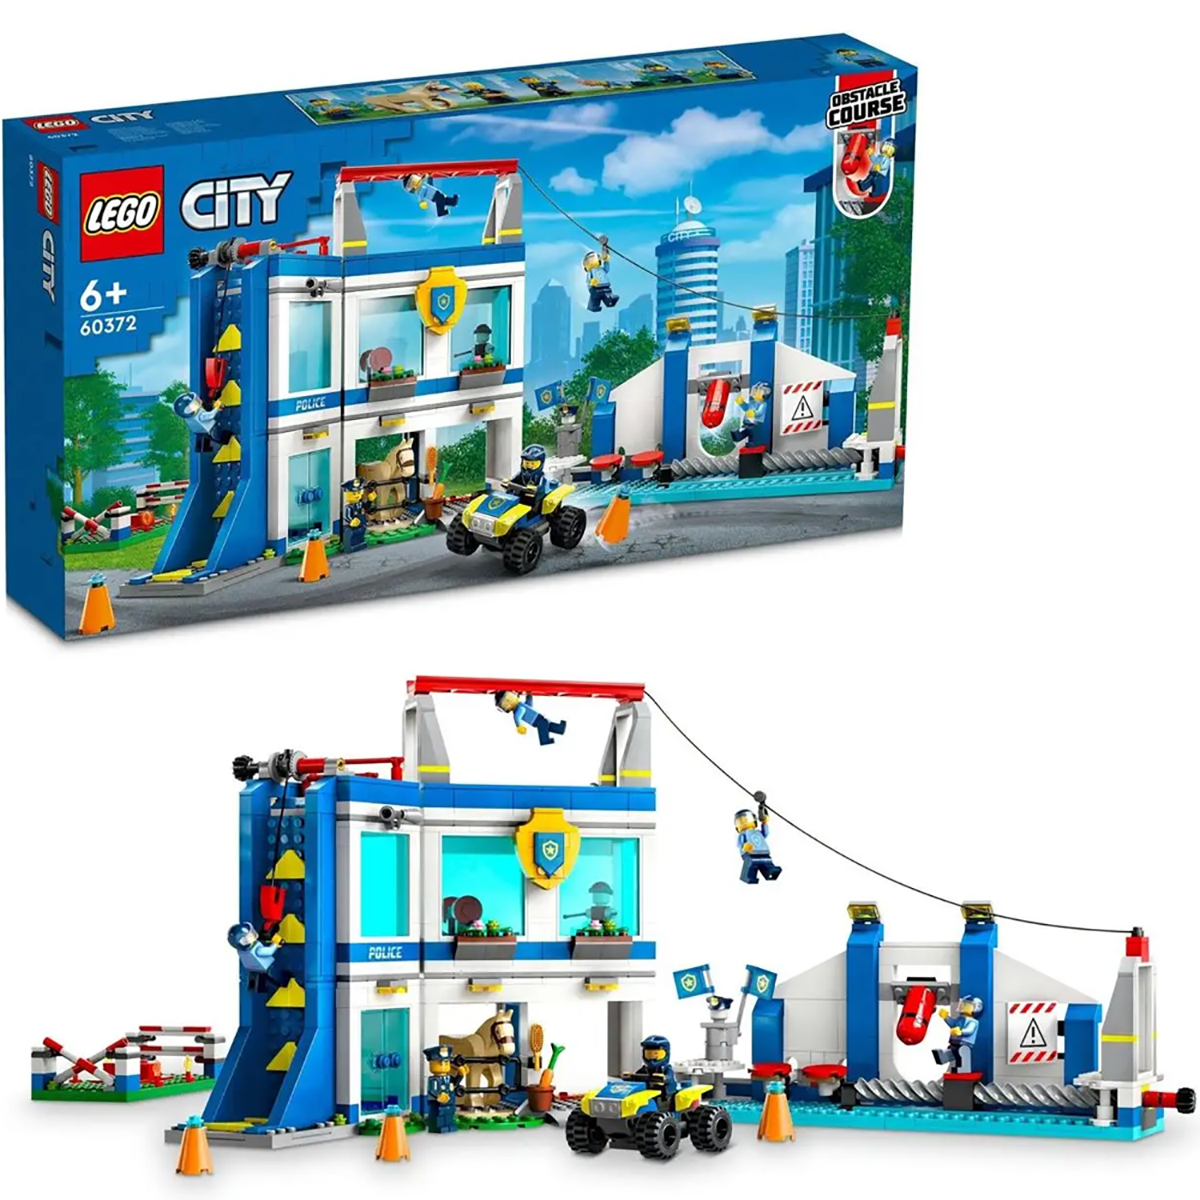 Конструктор LEGO City Полицейская тренировочная академия, 823 детали, 60372 конструктор lego city исследовательская водолазная лодка 182 детали 60377